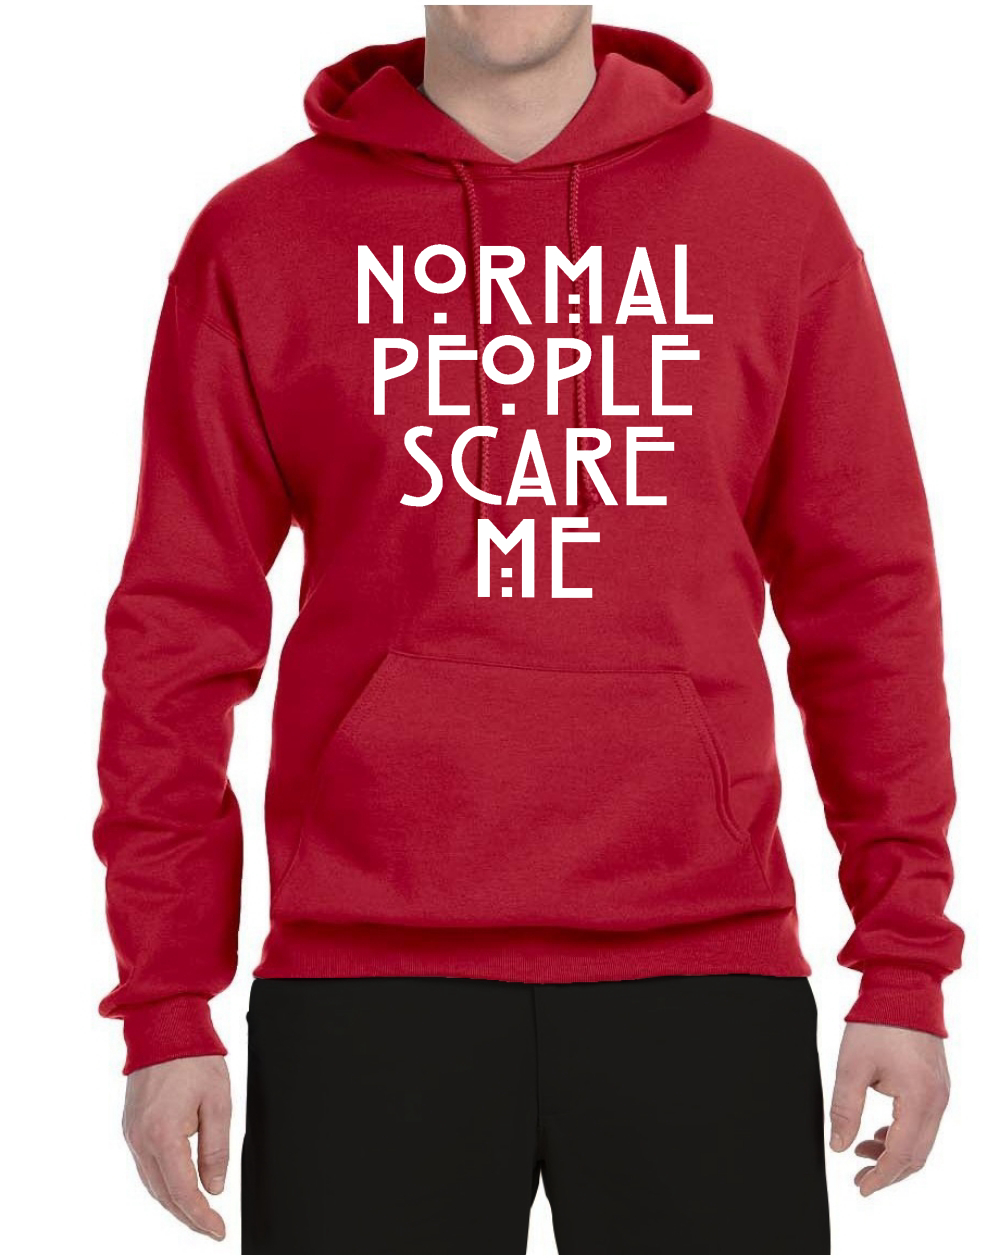 Normal People Scare Me Pullover Hoodie Sweatshirt Mens Slim Fit Graphic S-3XL 